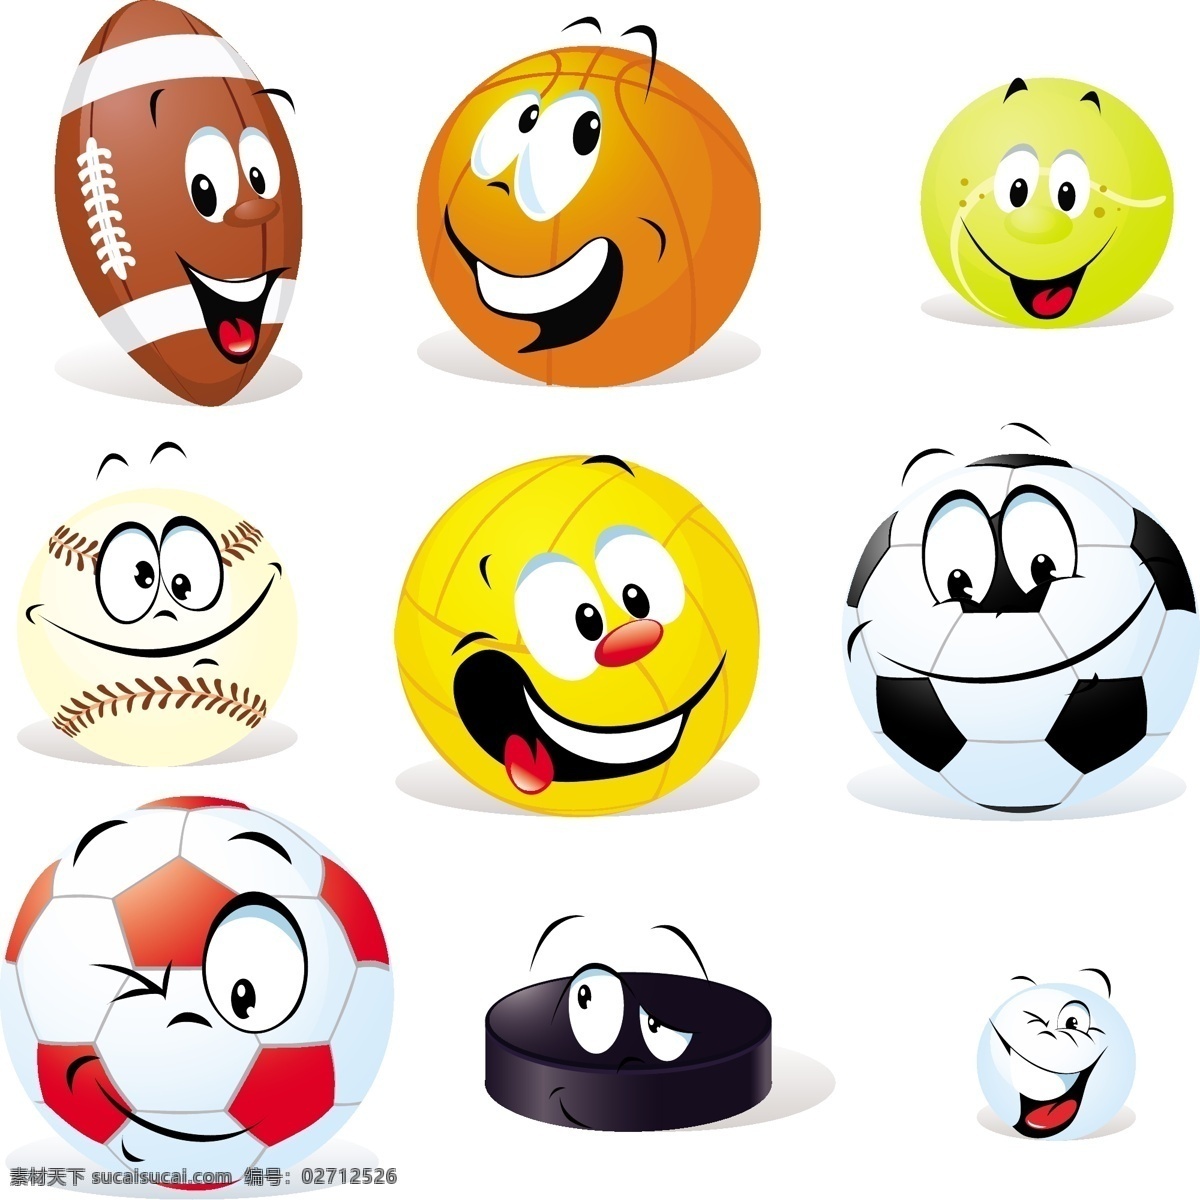 卡通 体育用品 表情 橄榄球 篮球 足球 排球 乒乓球 笑脸 有趣 可爱 滑稽 幽默 手绘 矢量 蔬菜水果 卡通设计